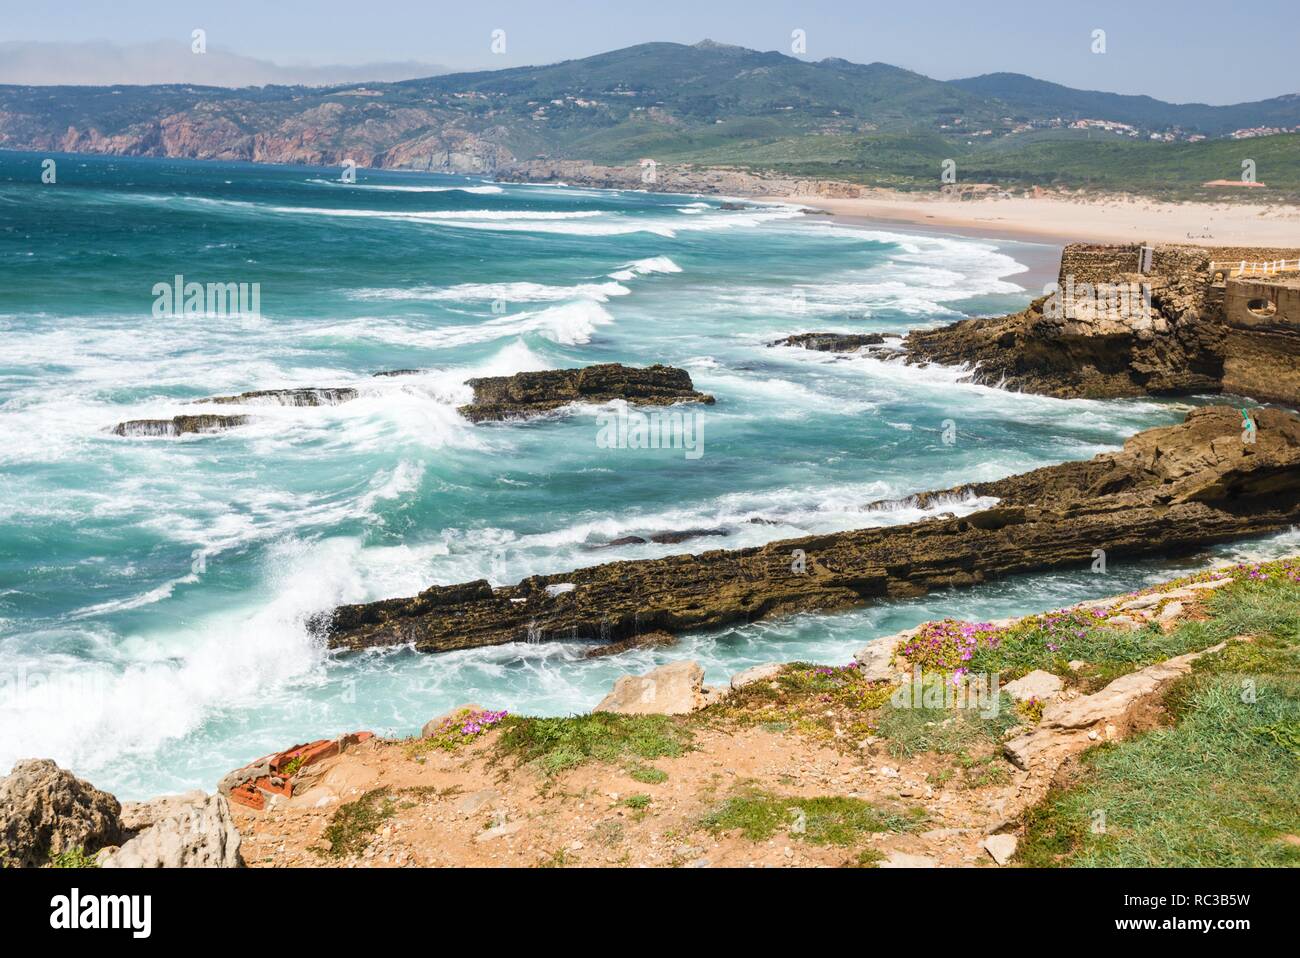 La spiaggia di Praia do Guincho è popolare per il surf, windsurf e kitesurf. Guincho, Parc naturel de Sintra-Cascais, Portogallo Foto Stock